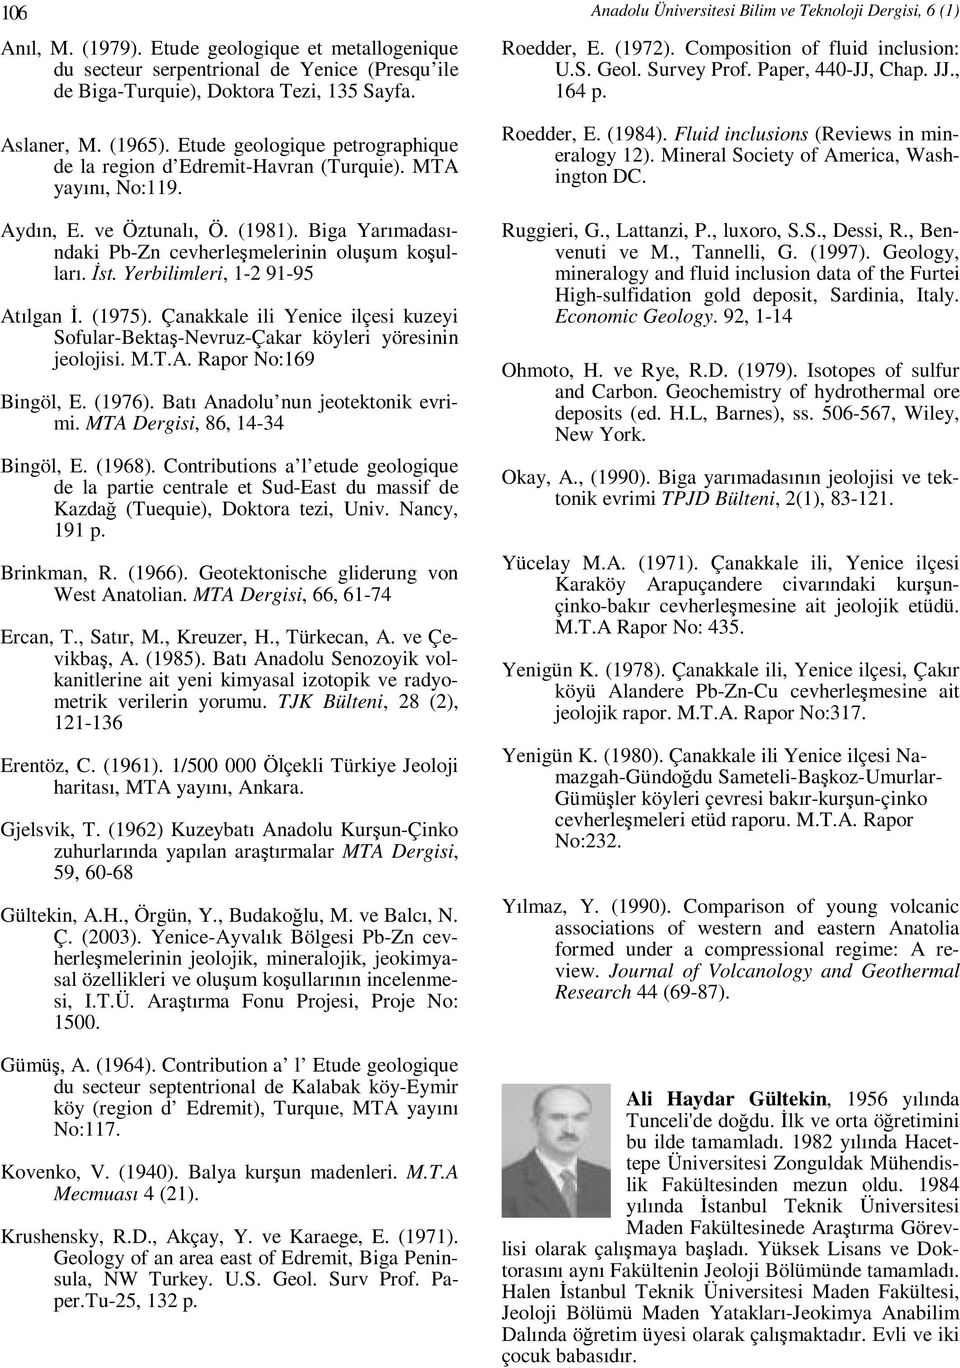 Yerbilimleri, 1-2 91-95 Atılgan İ. (1975). Çanakkale ili Yenice ilçesi kuzeyi Sofular-Bektaş-Nevruz-Çakar köyleri yöresinin jeolojisi. M.T.A. Rapor No:169 Bingöl, E. (1976).